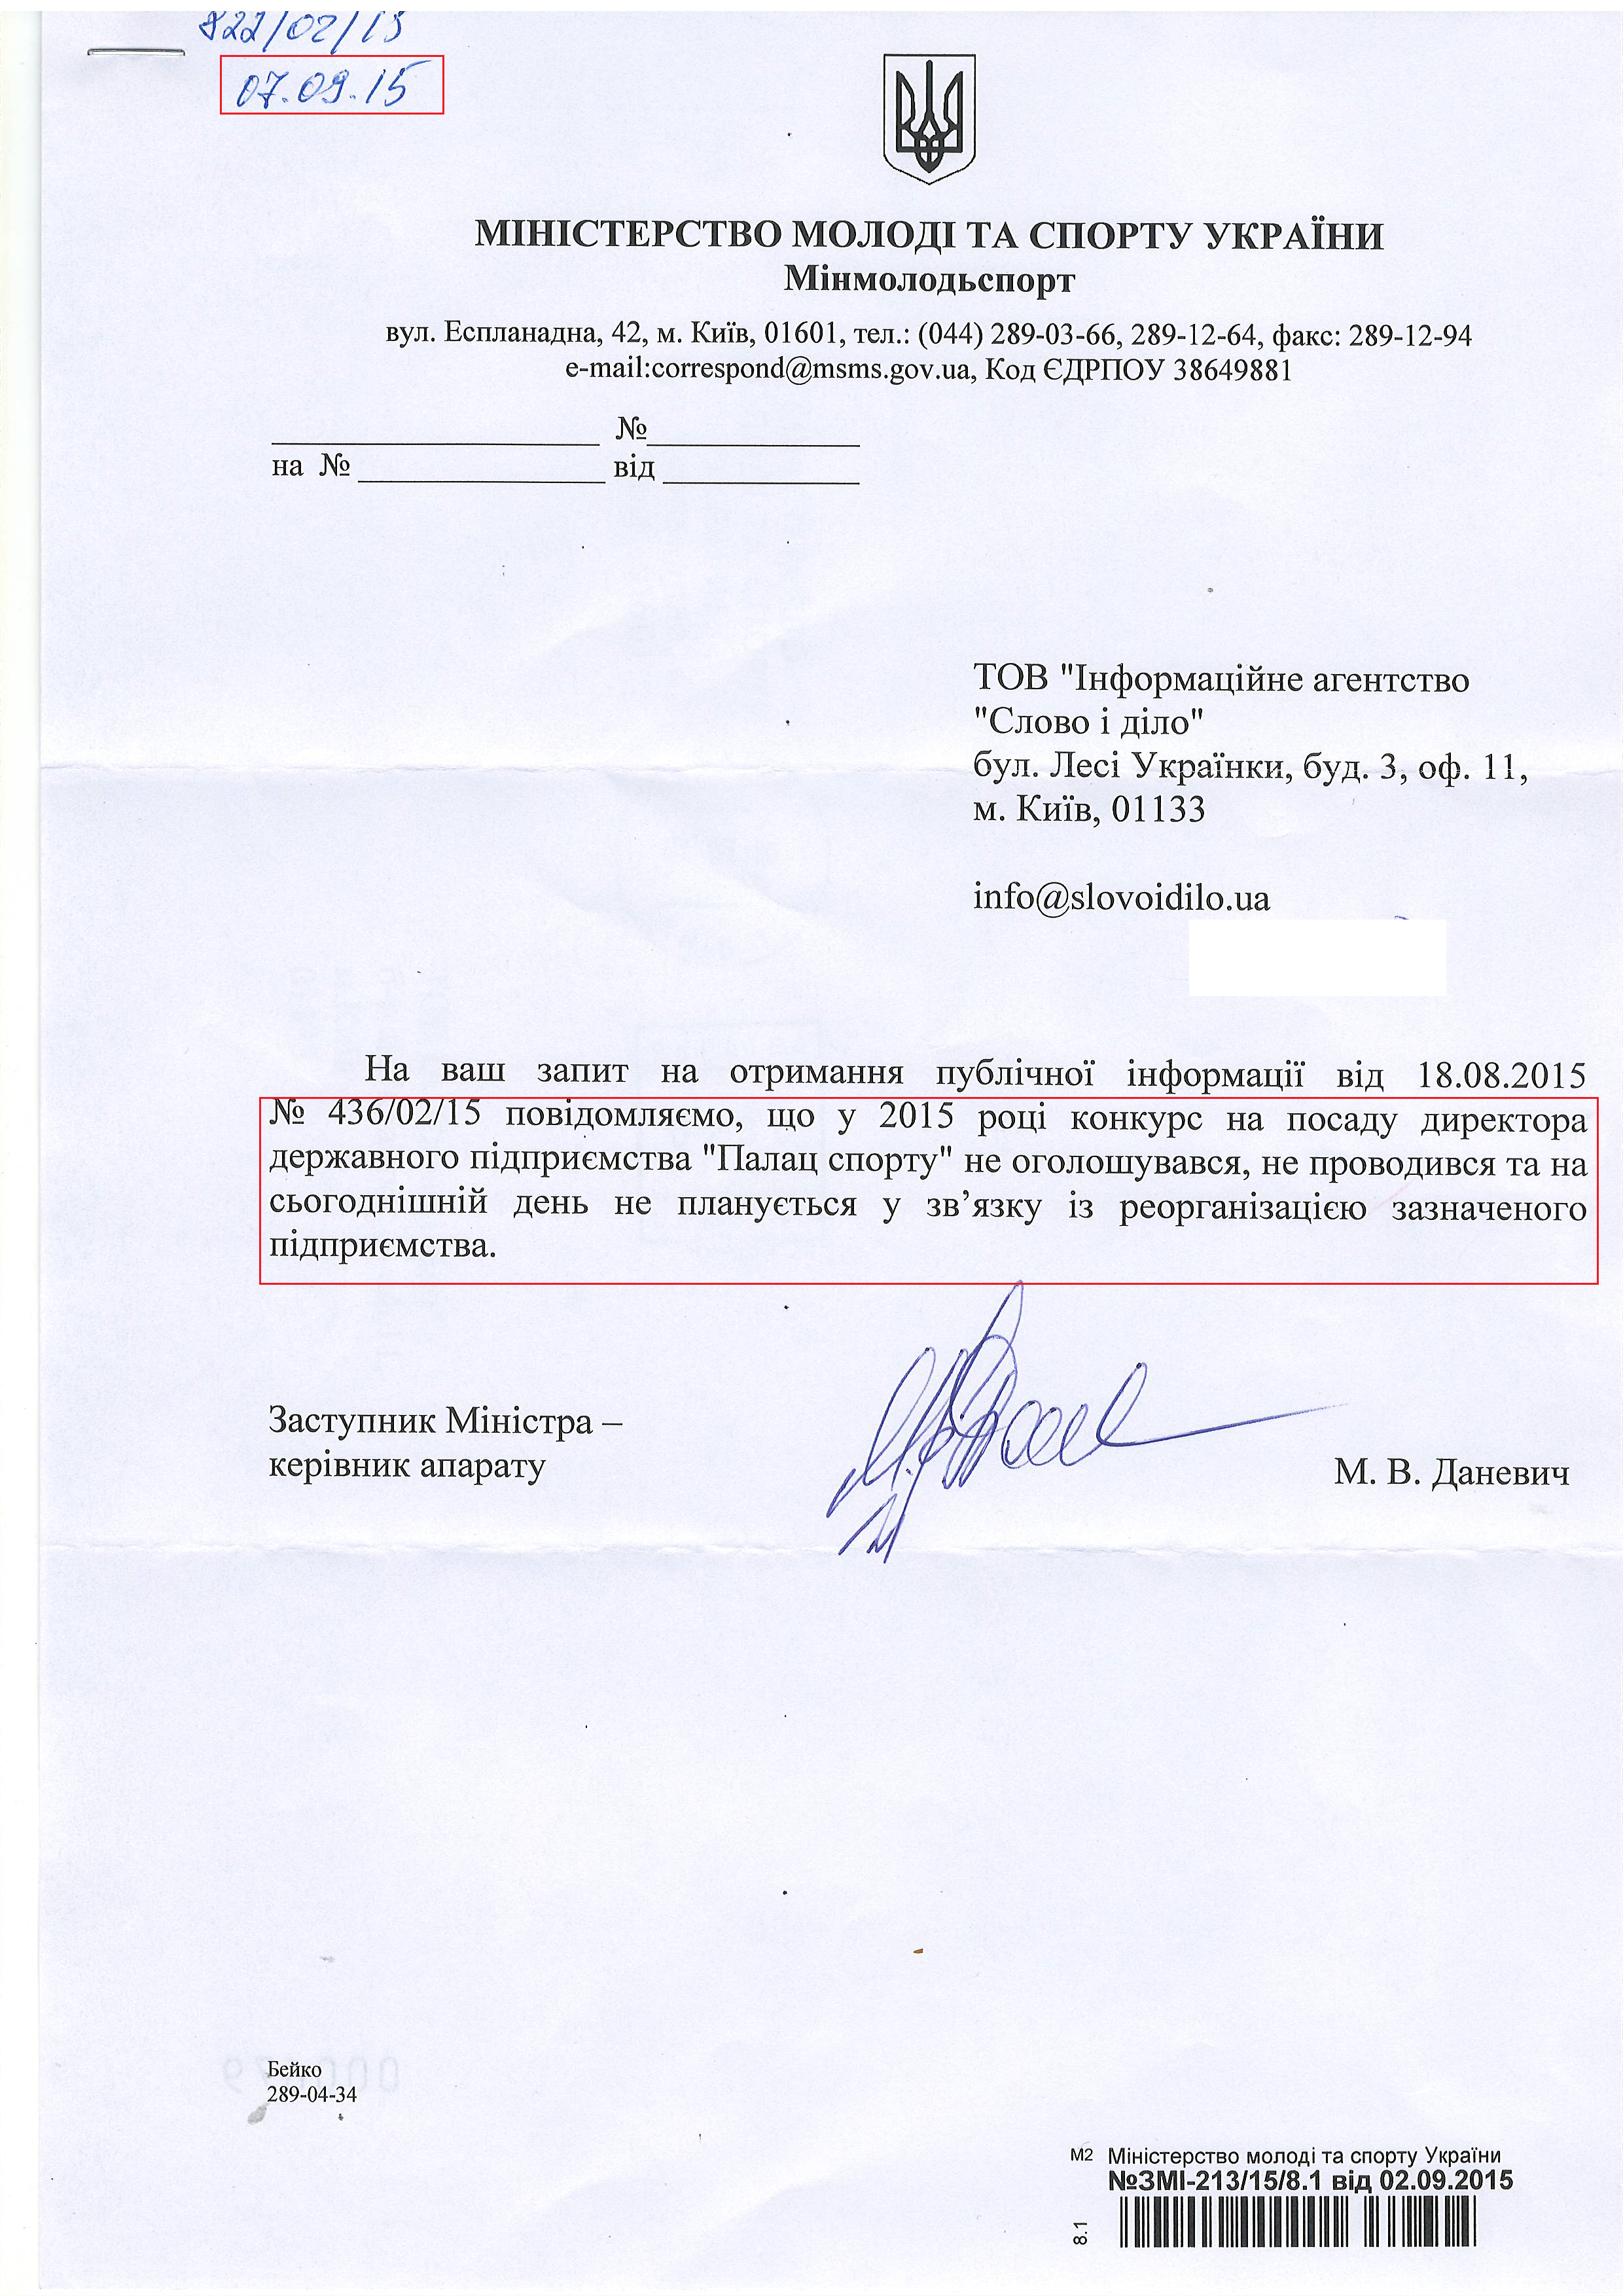 Лист Міністерства молоді та спорту України від 7 вересня 2015 року